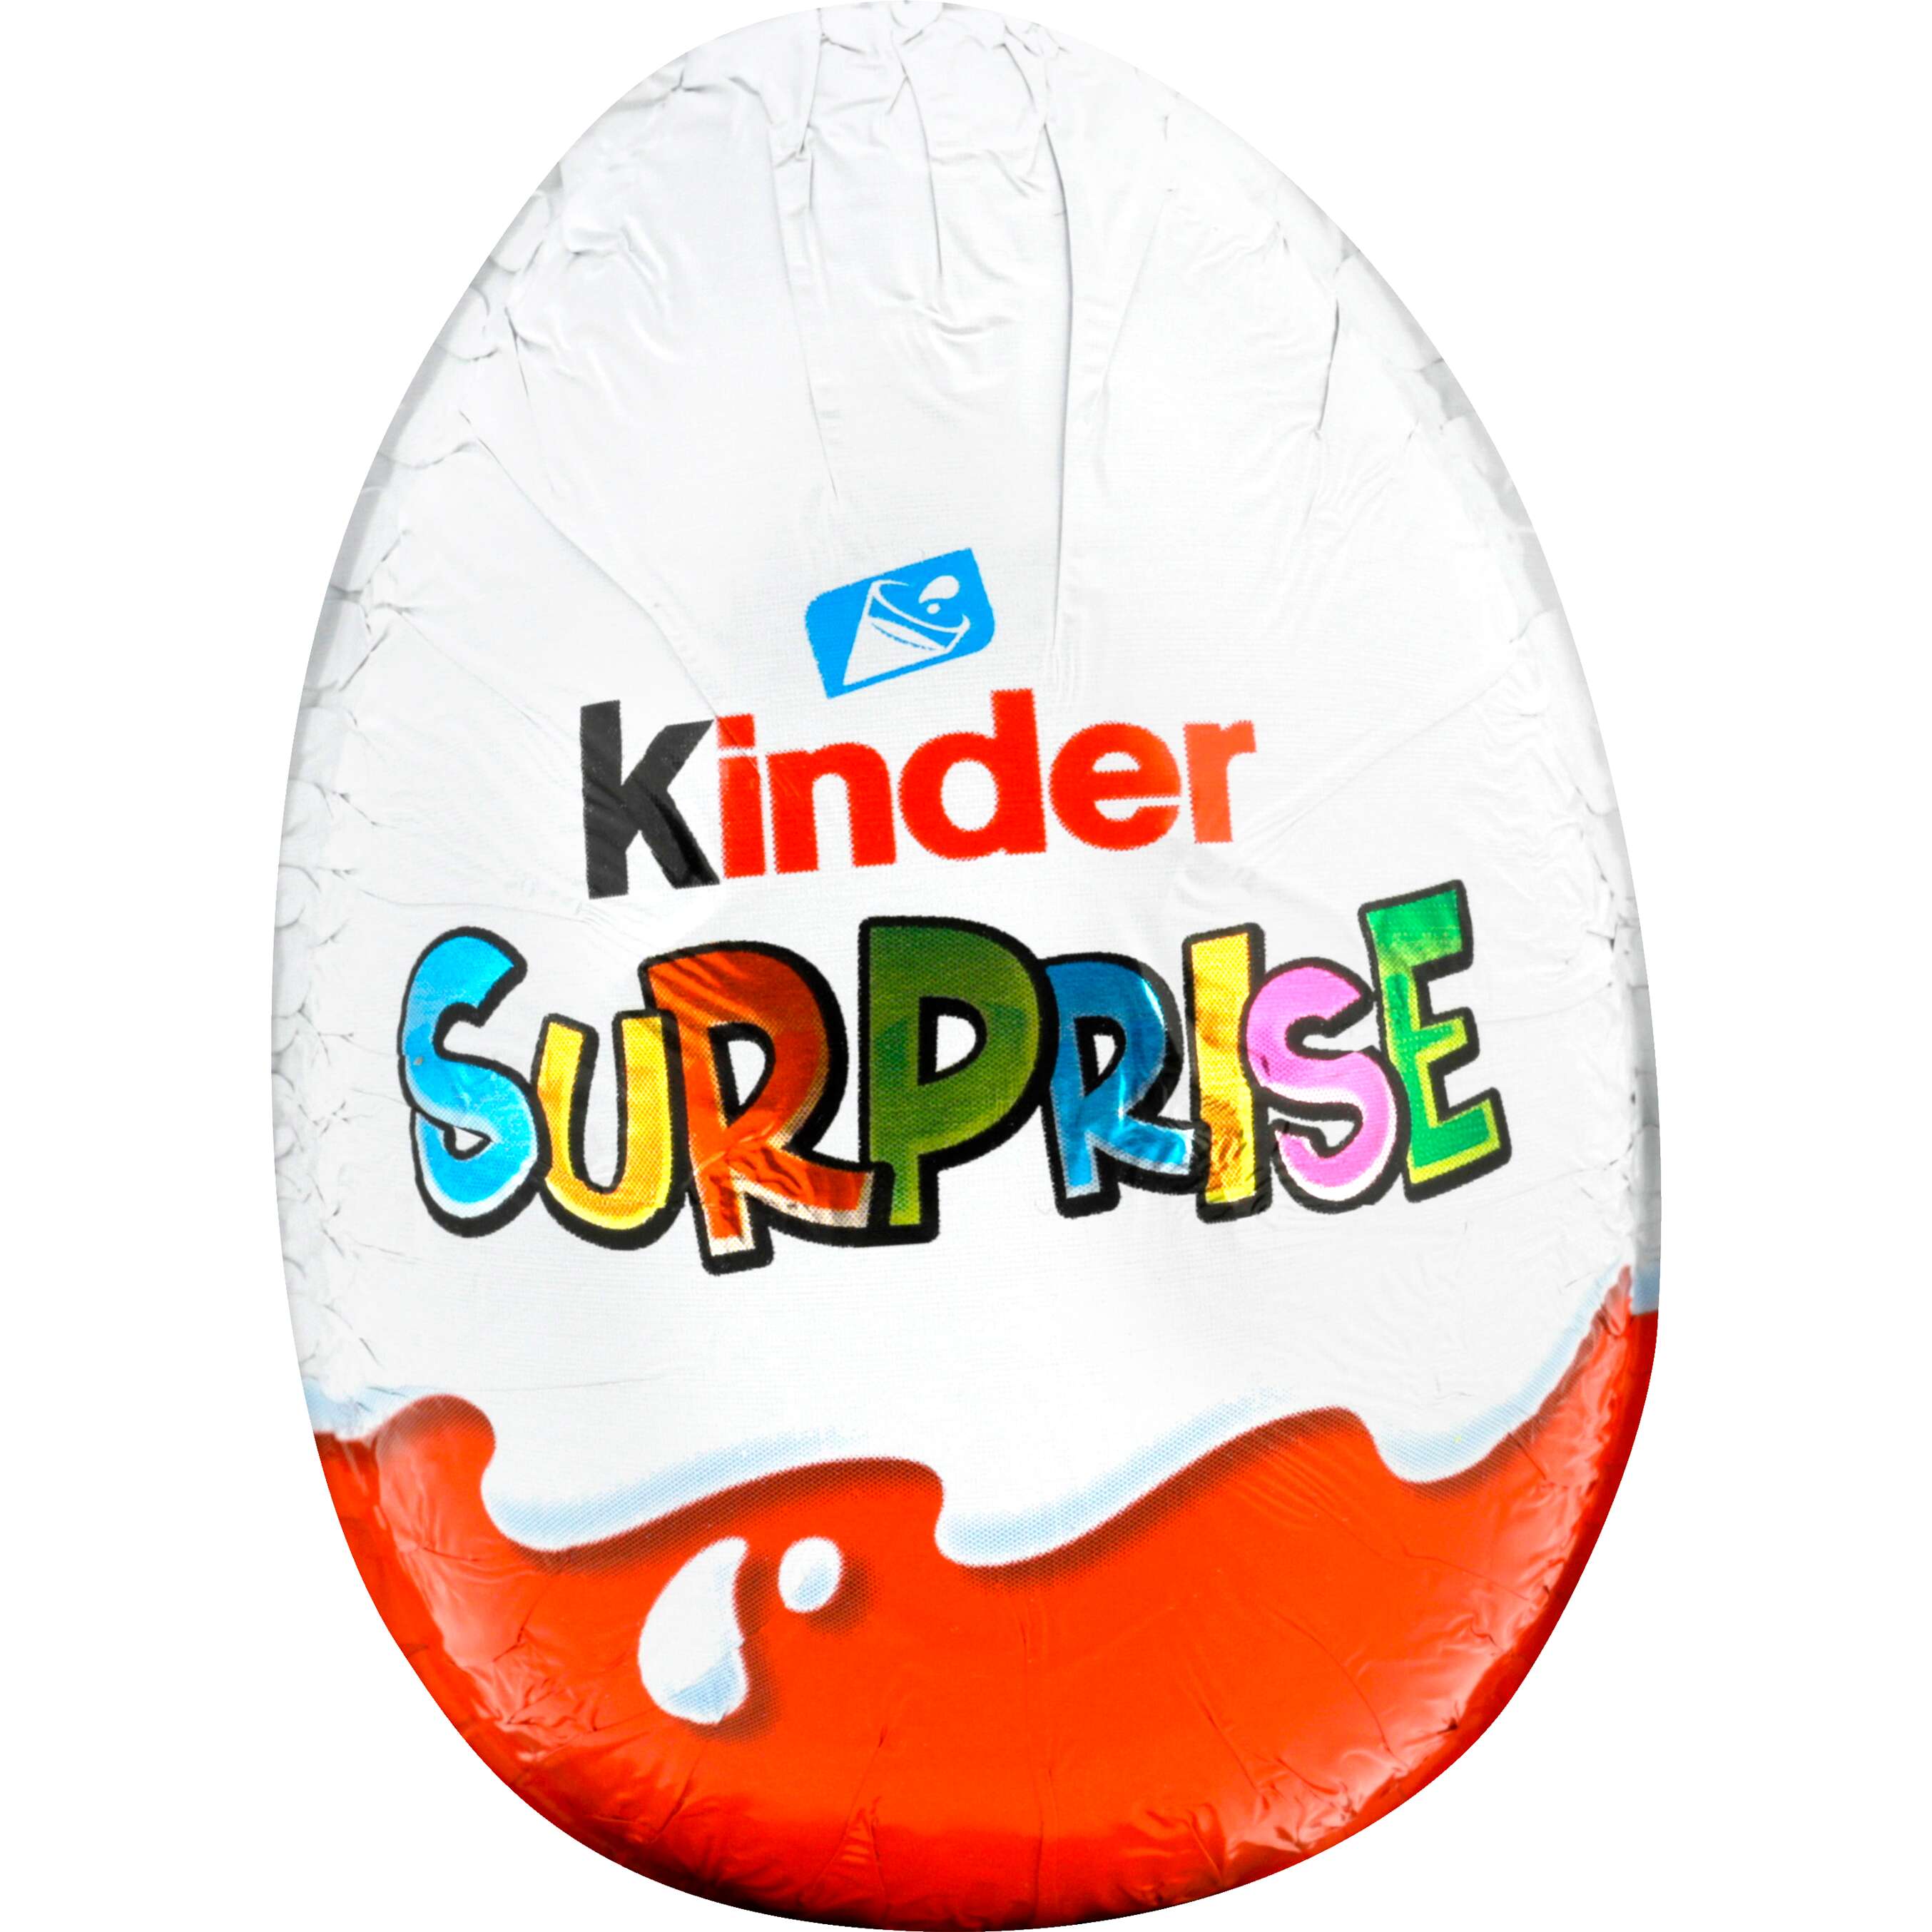 Zobrazit nabídku Kinder Surprise Čokoládové vajíčko s překvapením